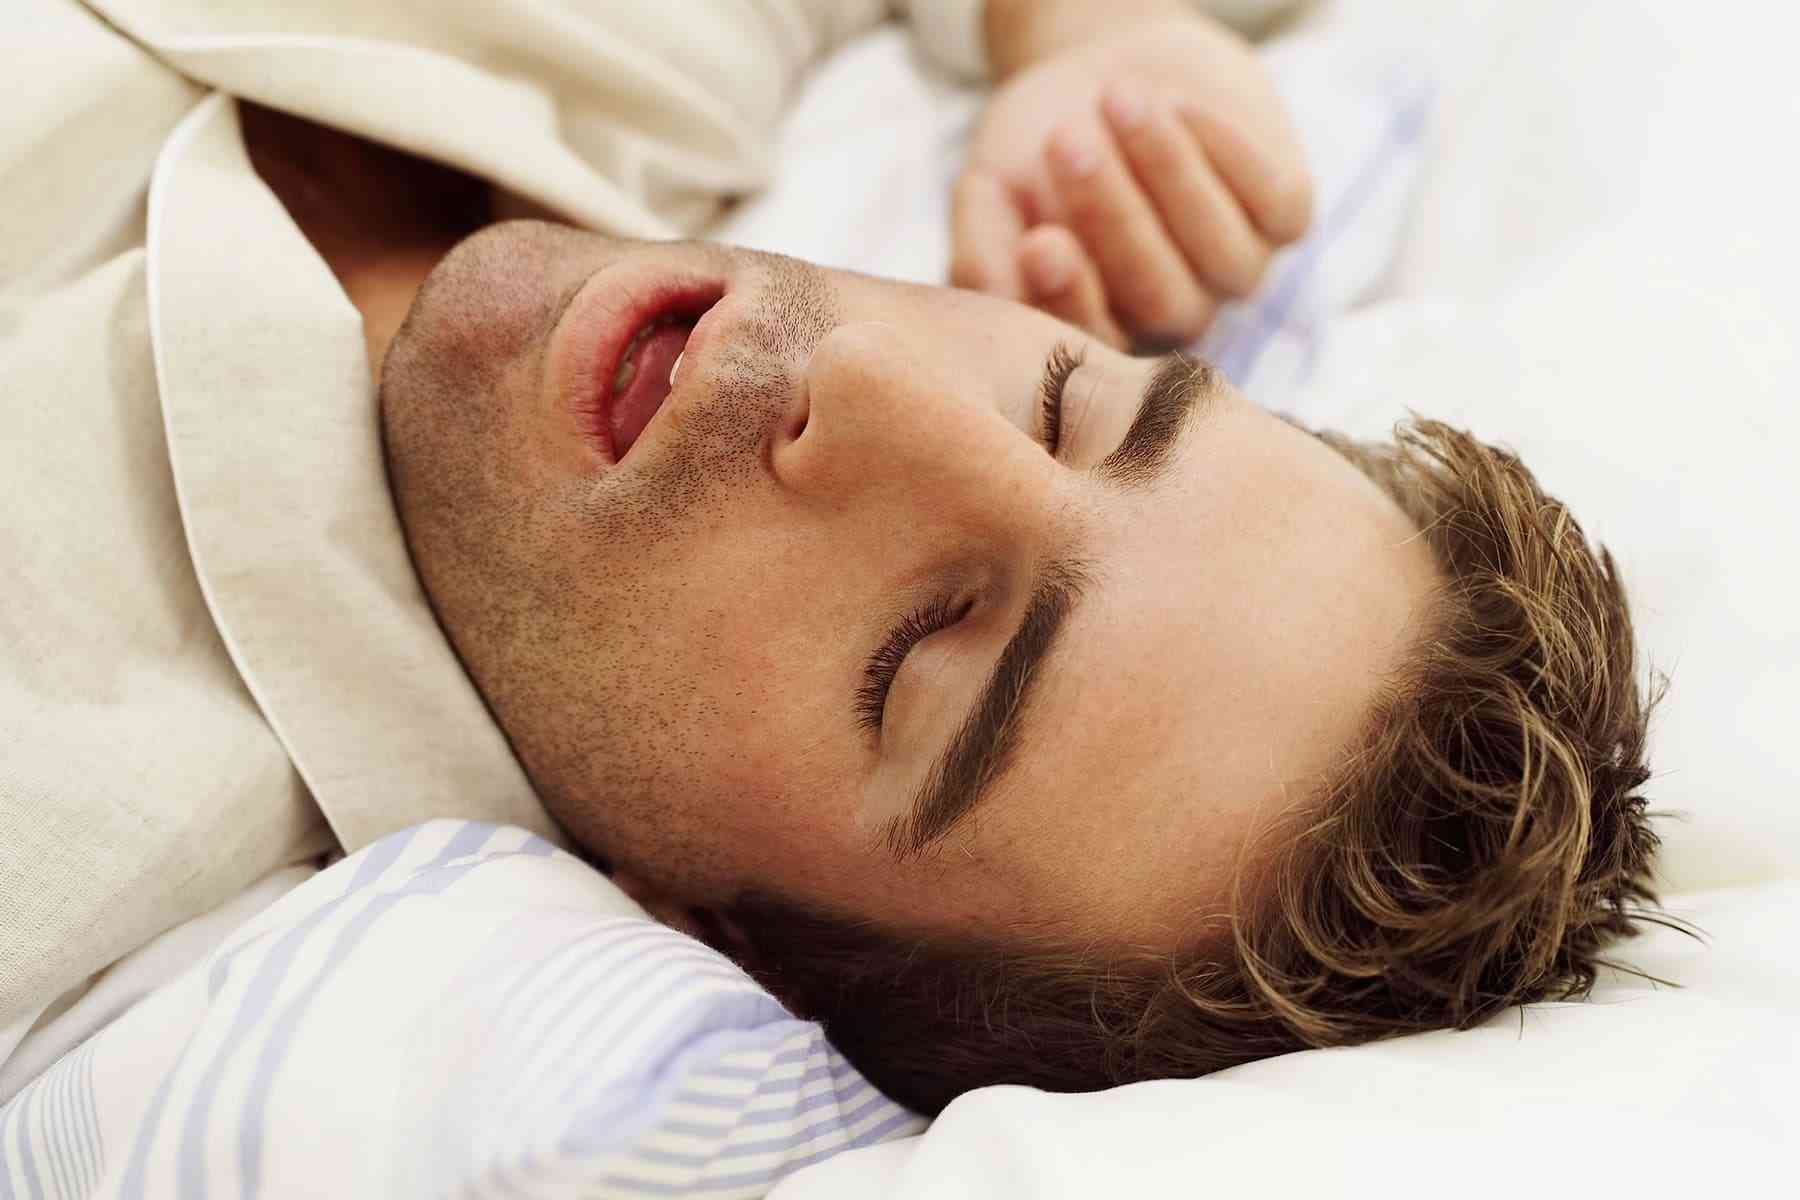 Ύπνική άπνοια: Οι παράγοντες κινδύνου που πρέπει να ξέρετε